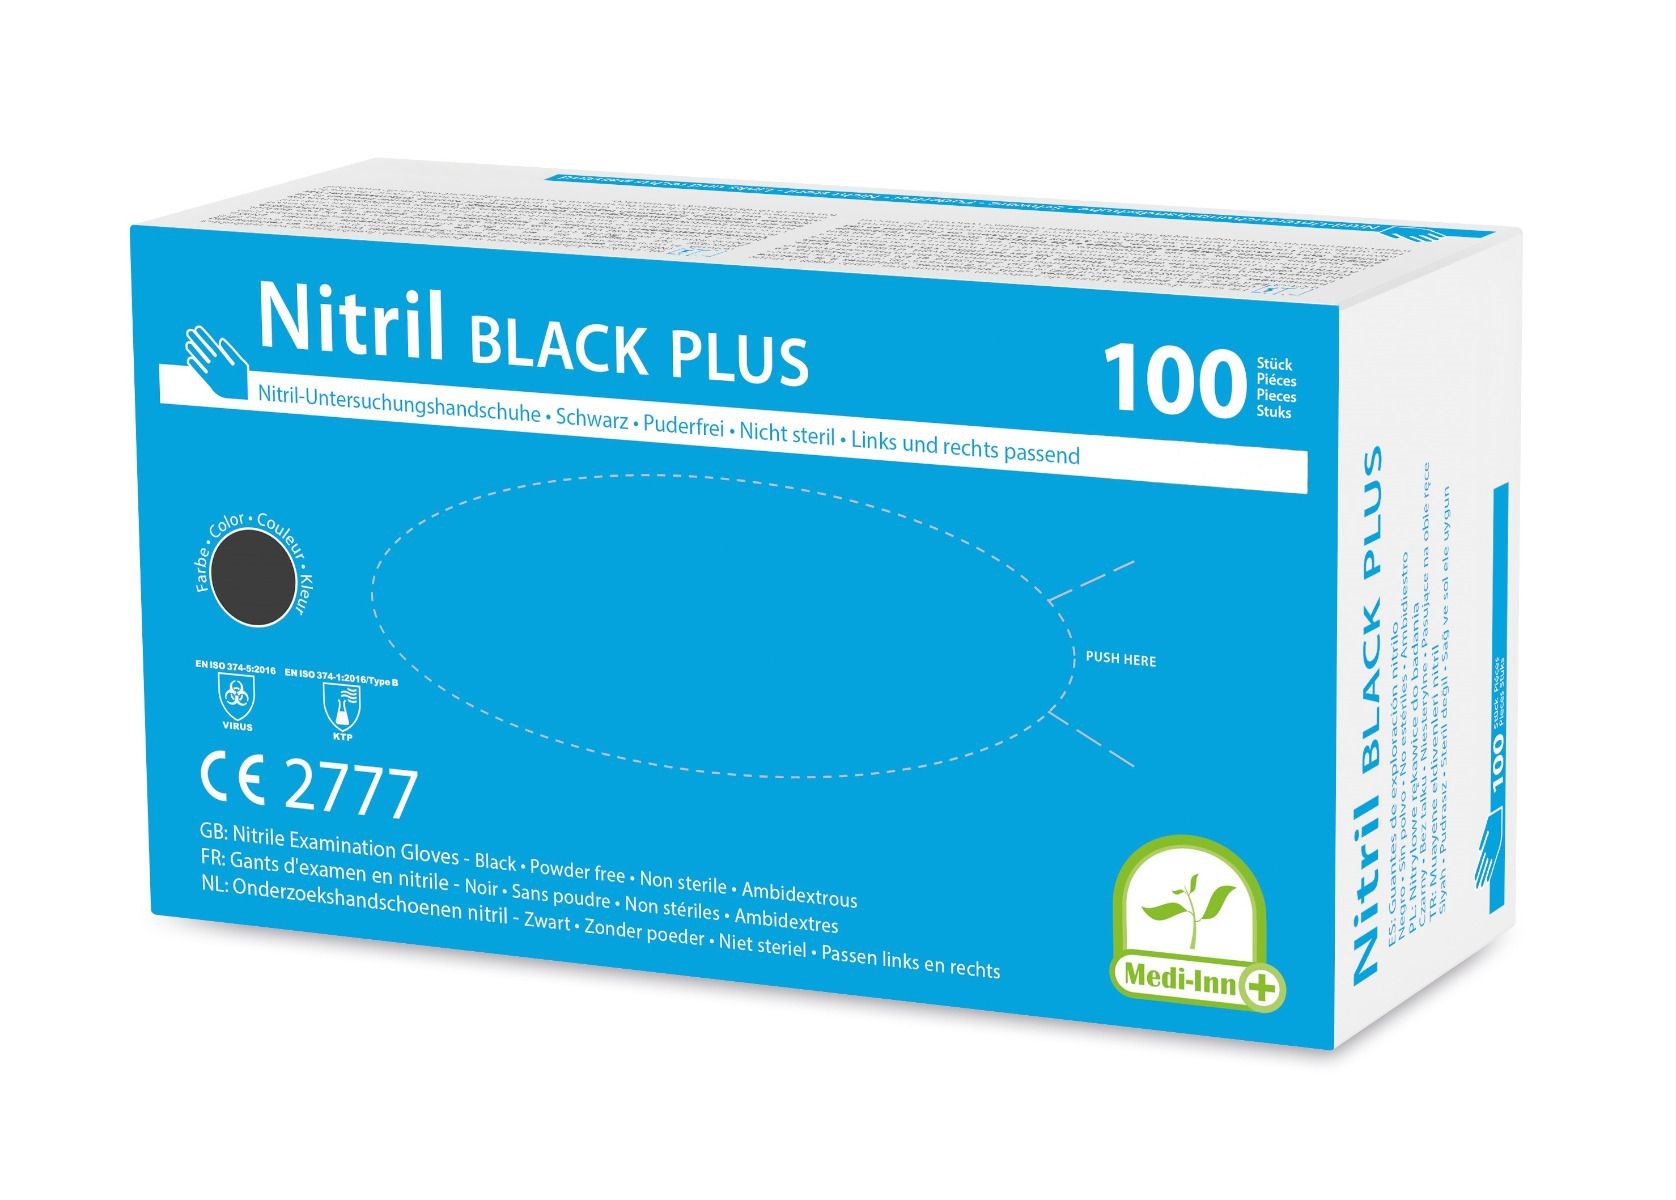 Produktbild: Einmalhandschuhe Nitril Plus puderfrei schwarz S 10x100 Stück (Karton)